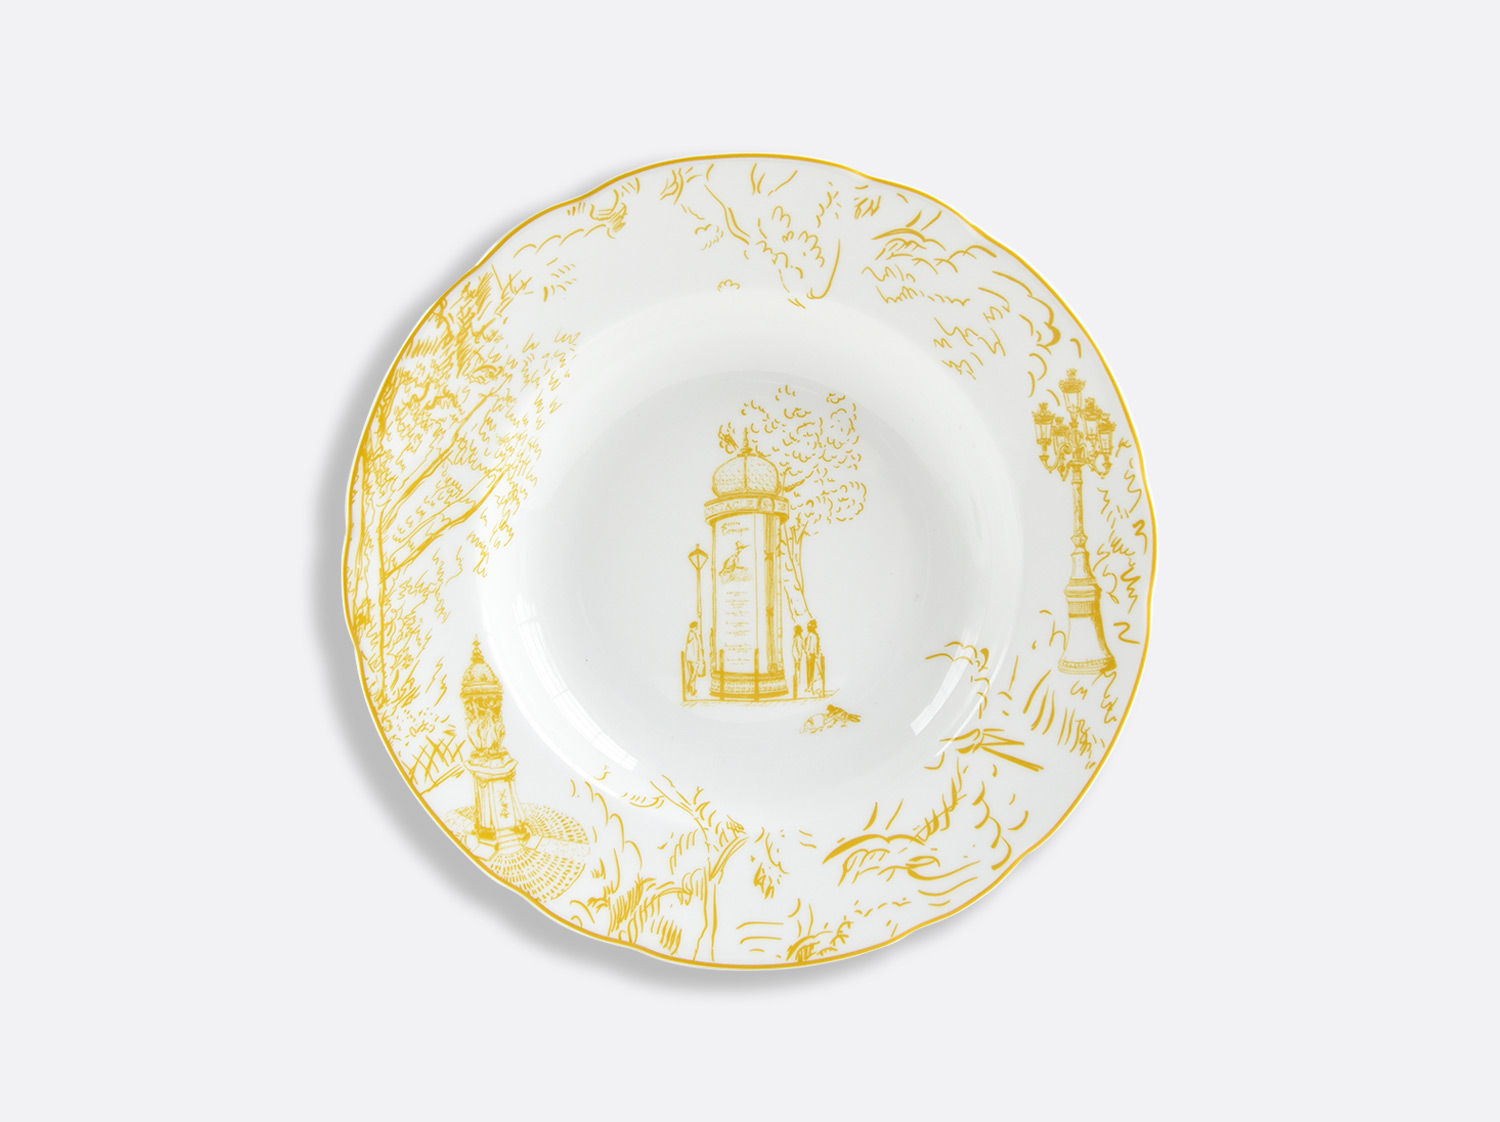 Assiette creuse à aile 23 cm en porcelaine de la collection Tout Paris Bernardaud